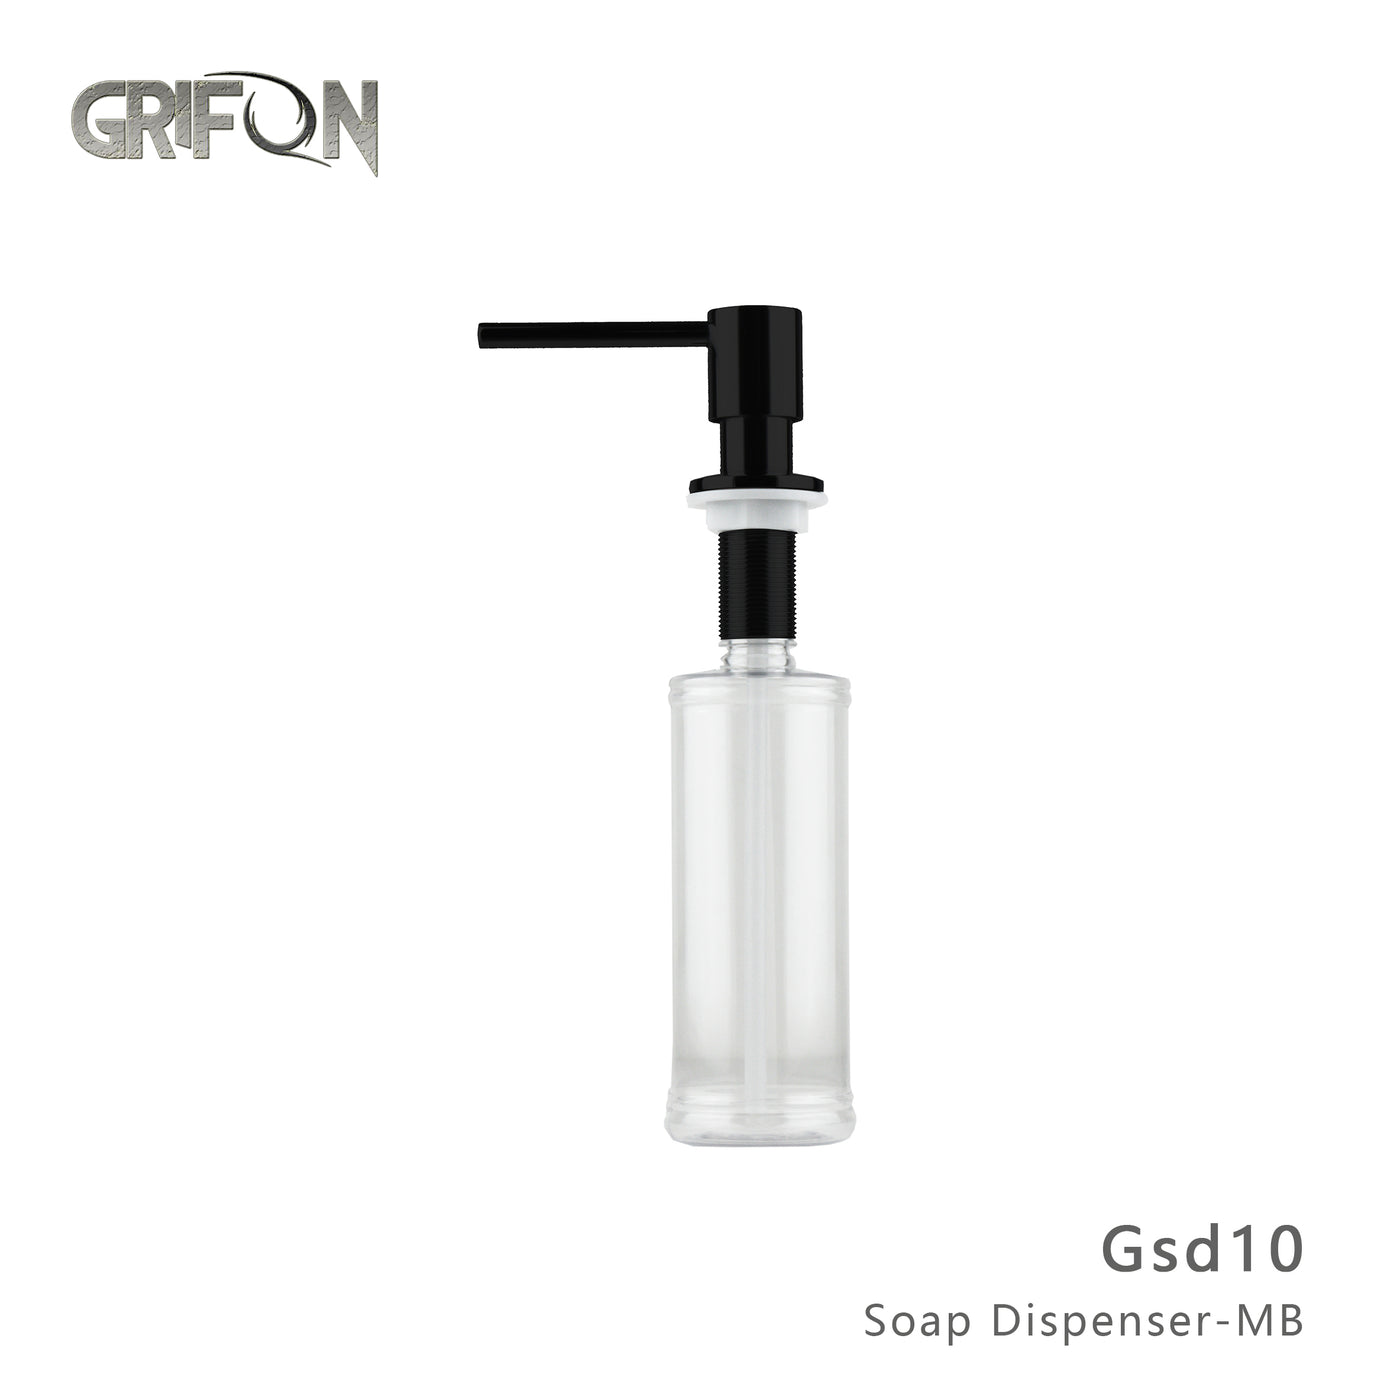 DISTRIBUTEUR DE SAVON - Distributeur de savon et lotion de cuisine GSD10 en acier inoxydable noir